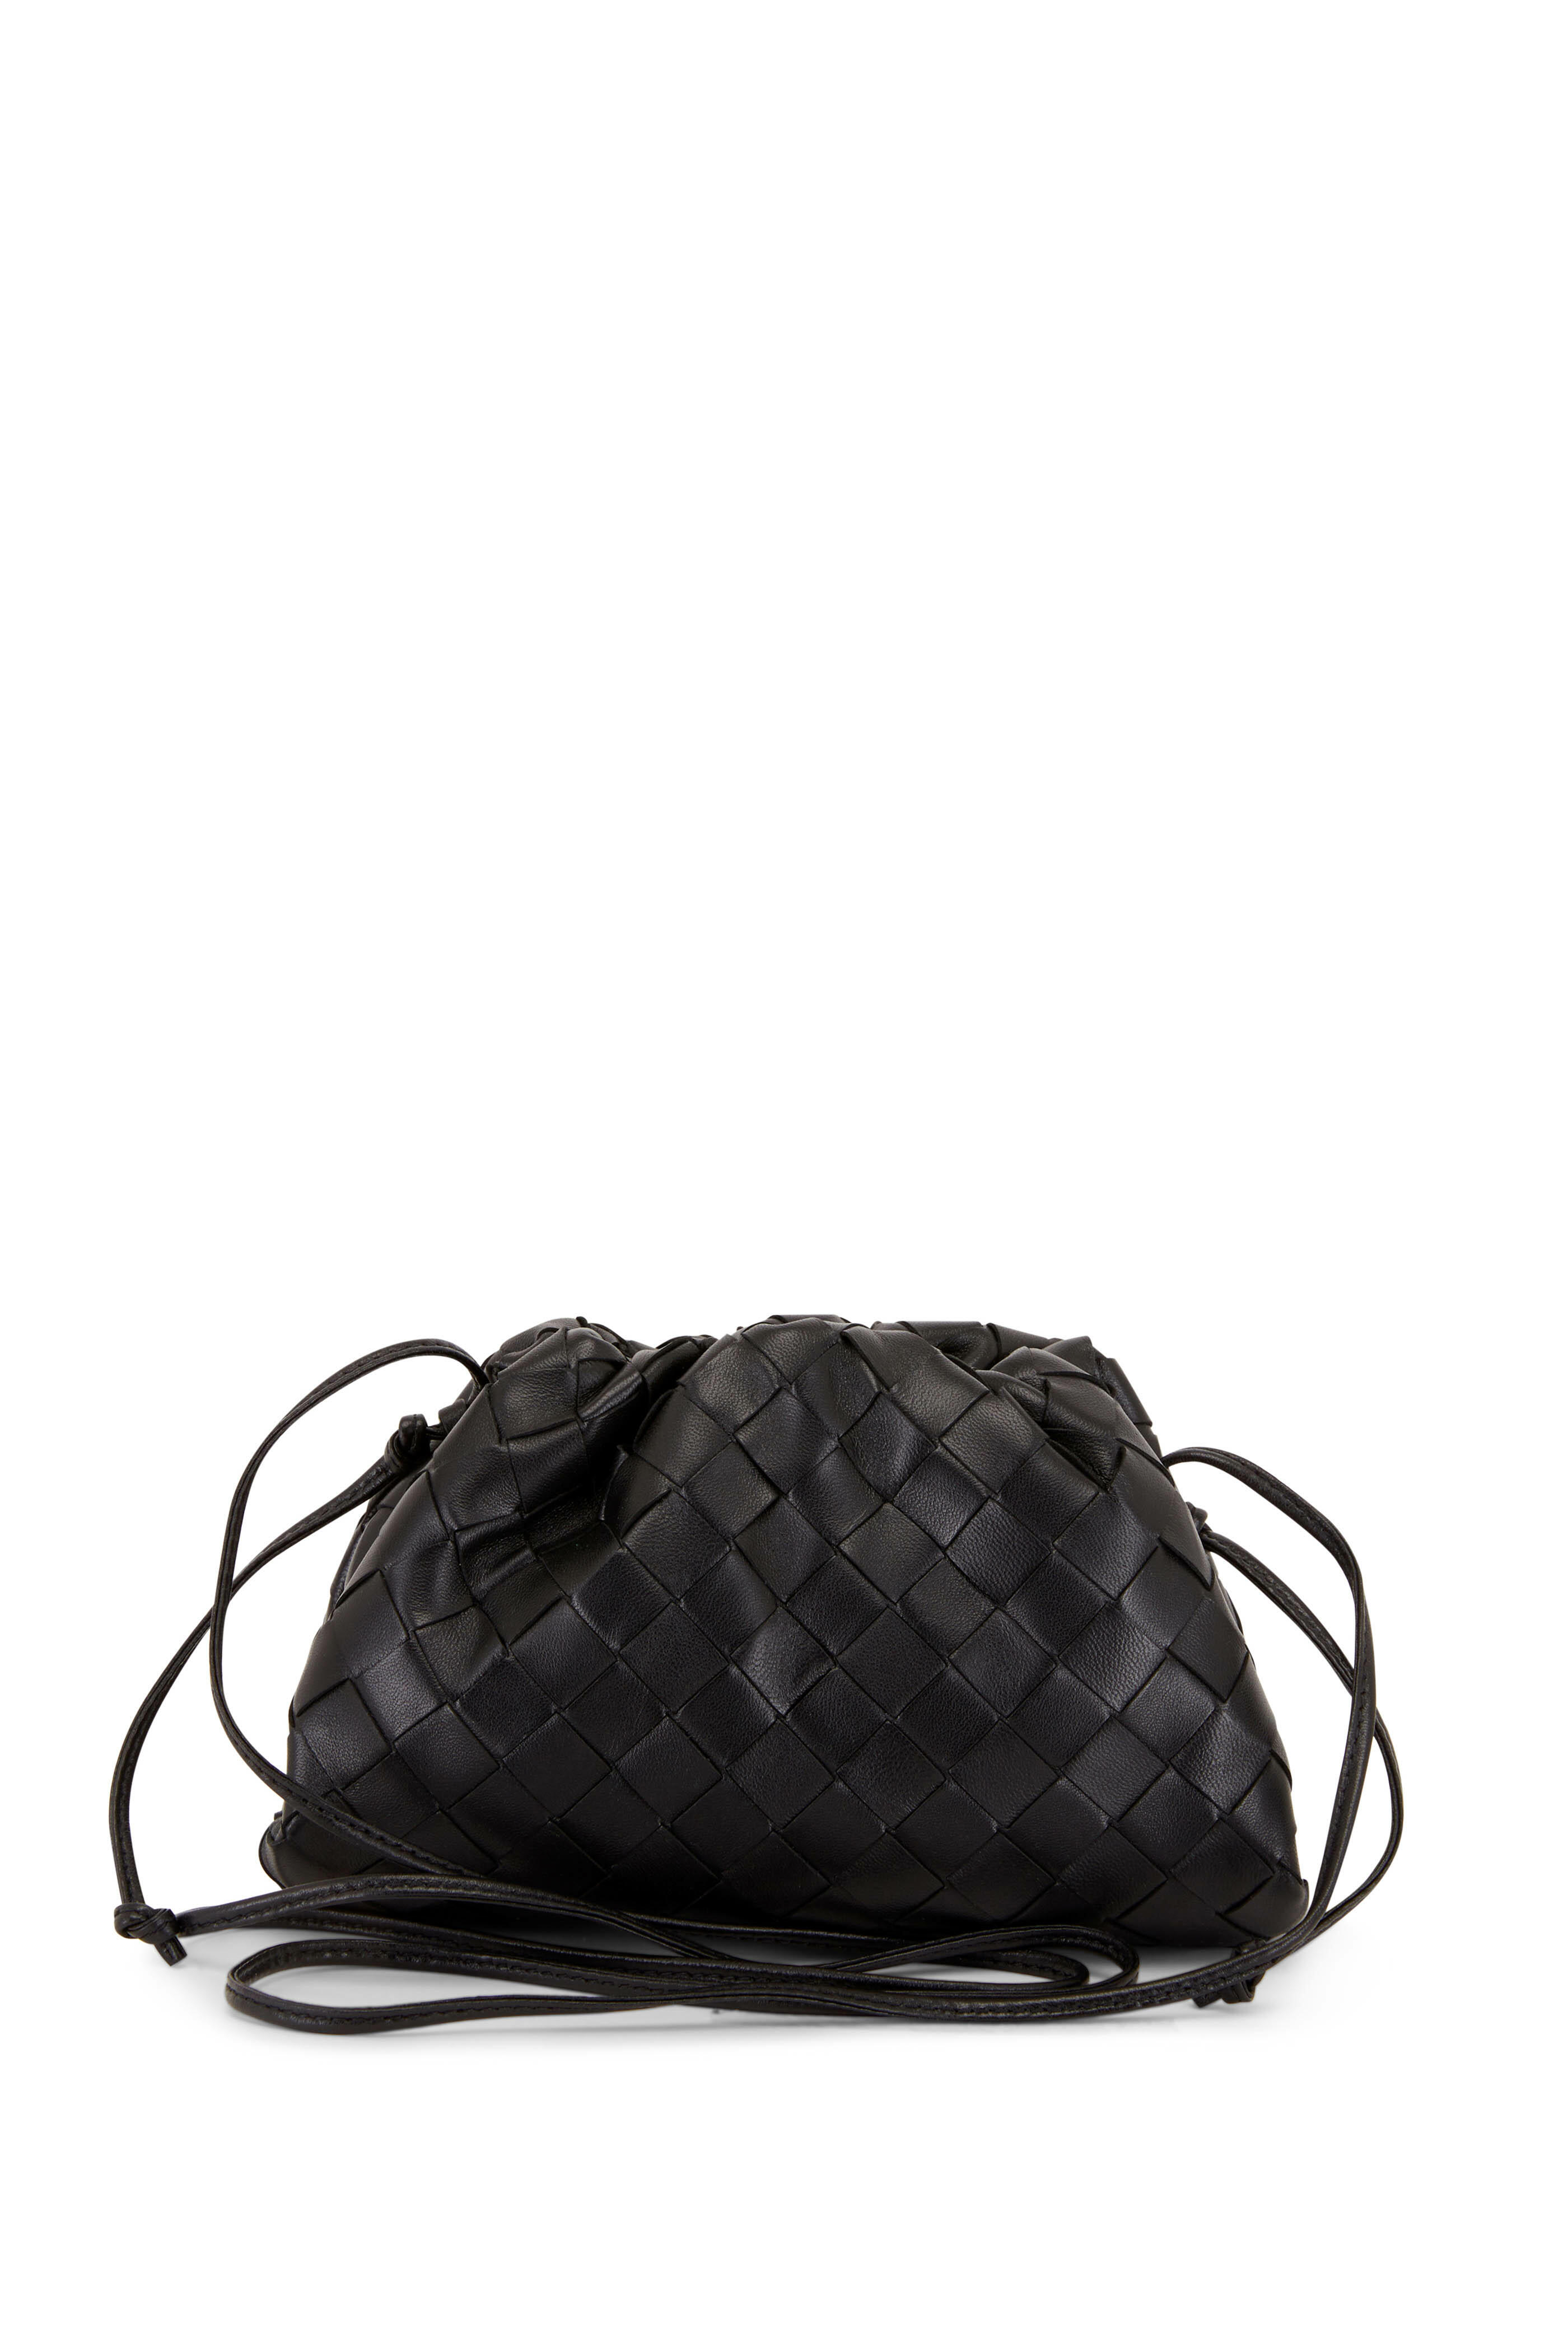 Bottega Veneta 'Mini Pouch' shoulder bag, Women's Bags